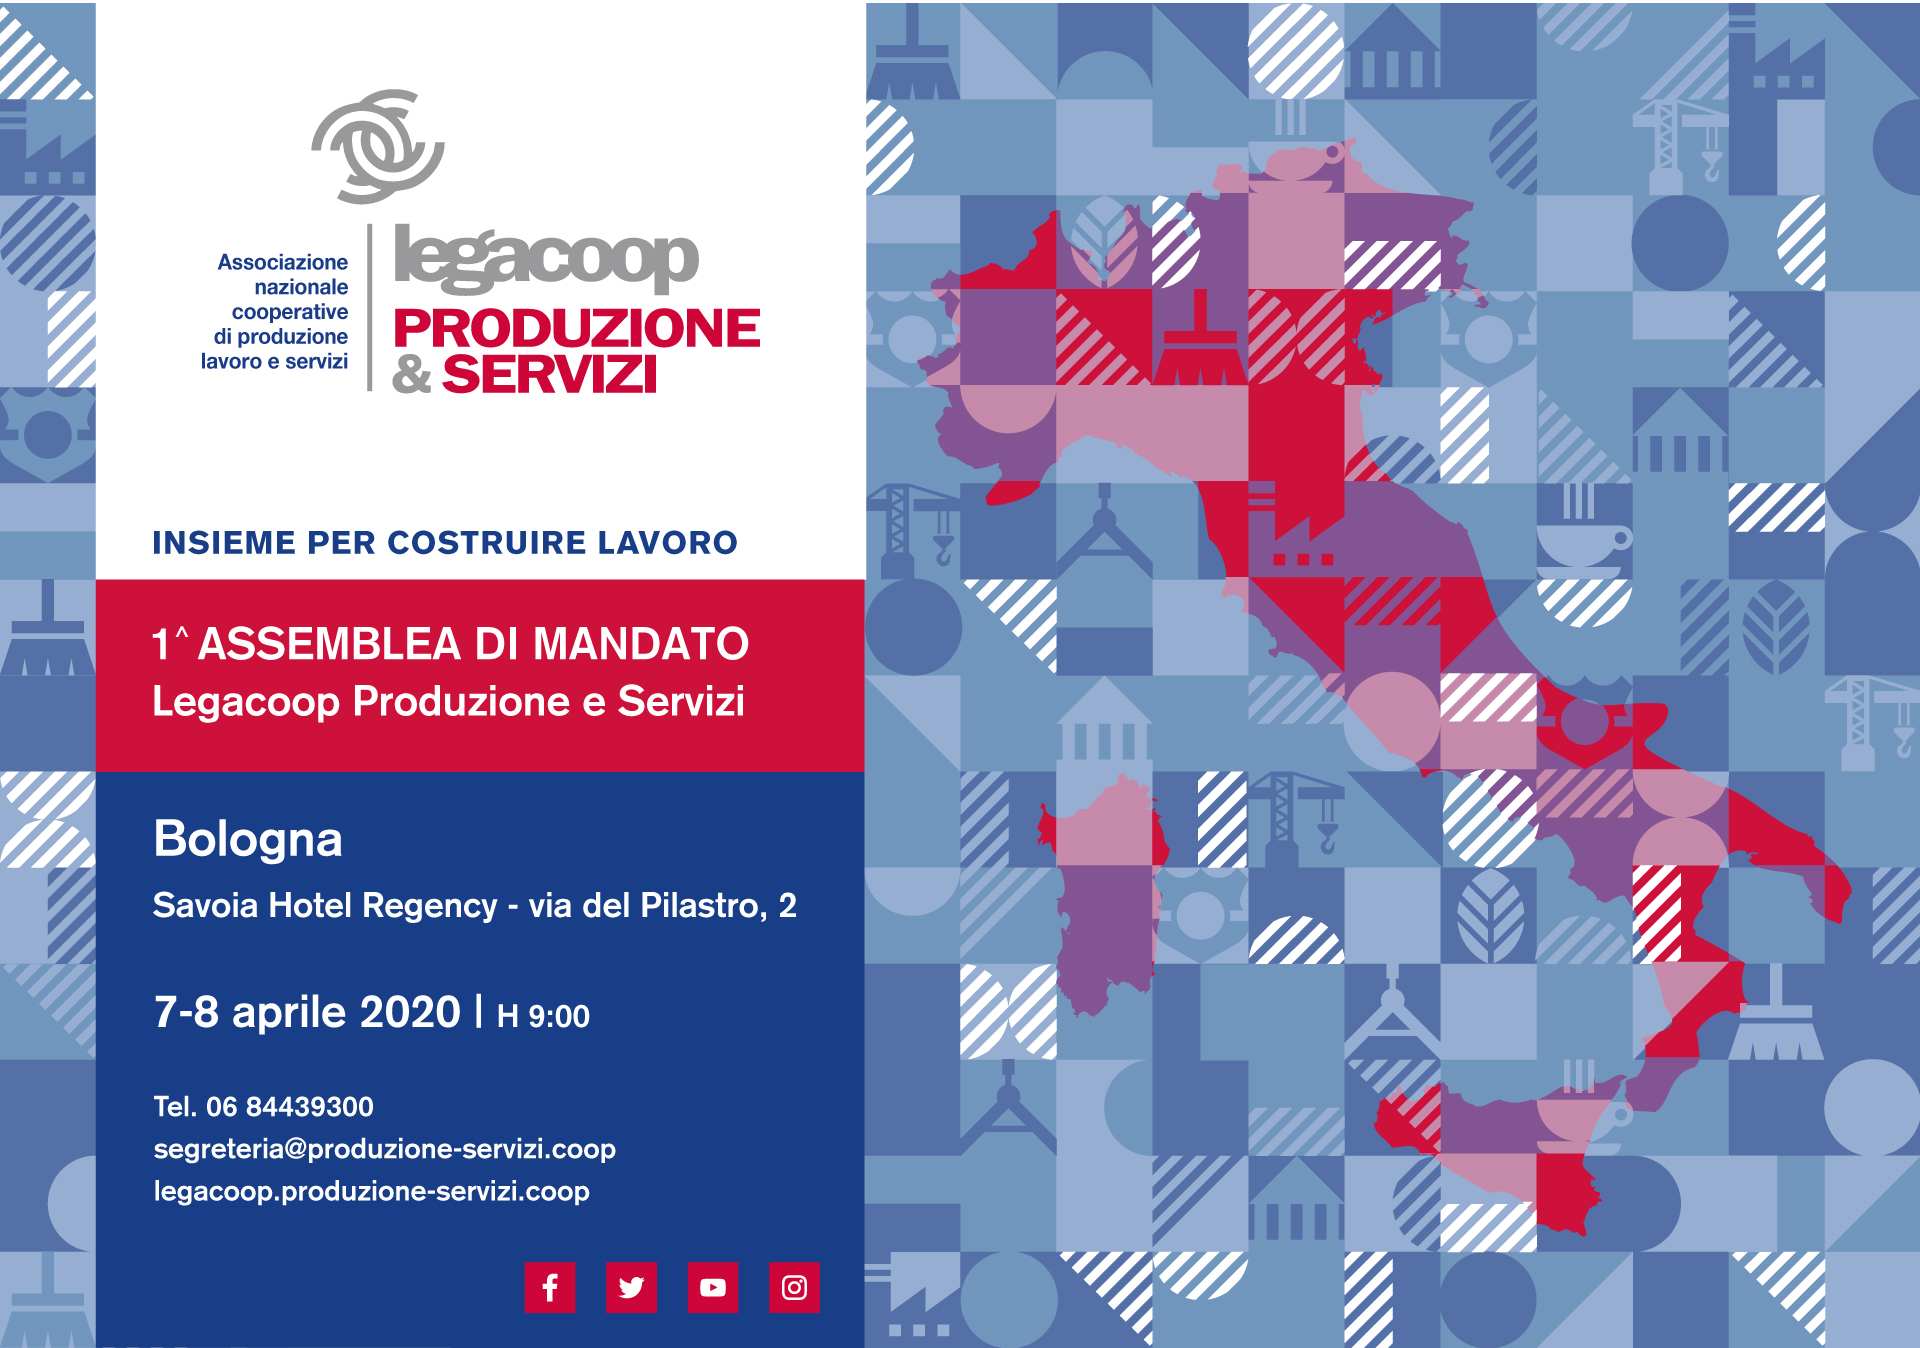 Save The Date: il 7-8 aprile a Bologna l’Assemblea di Legacoop Produzione e Servizi